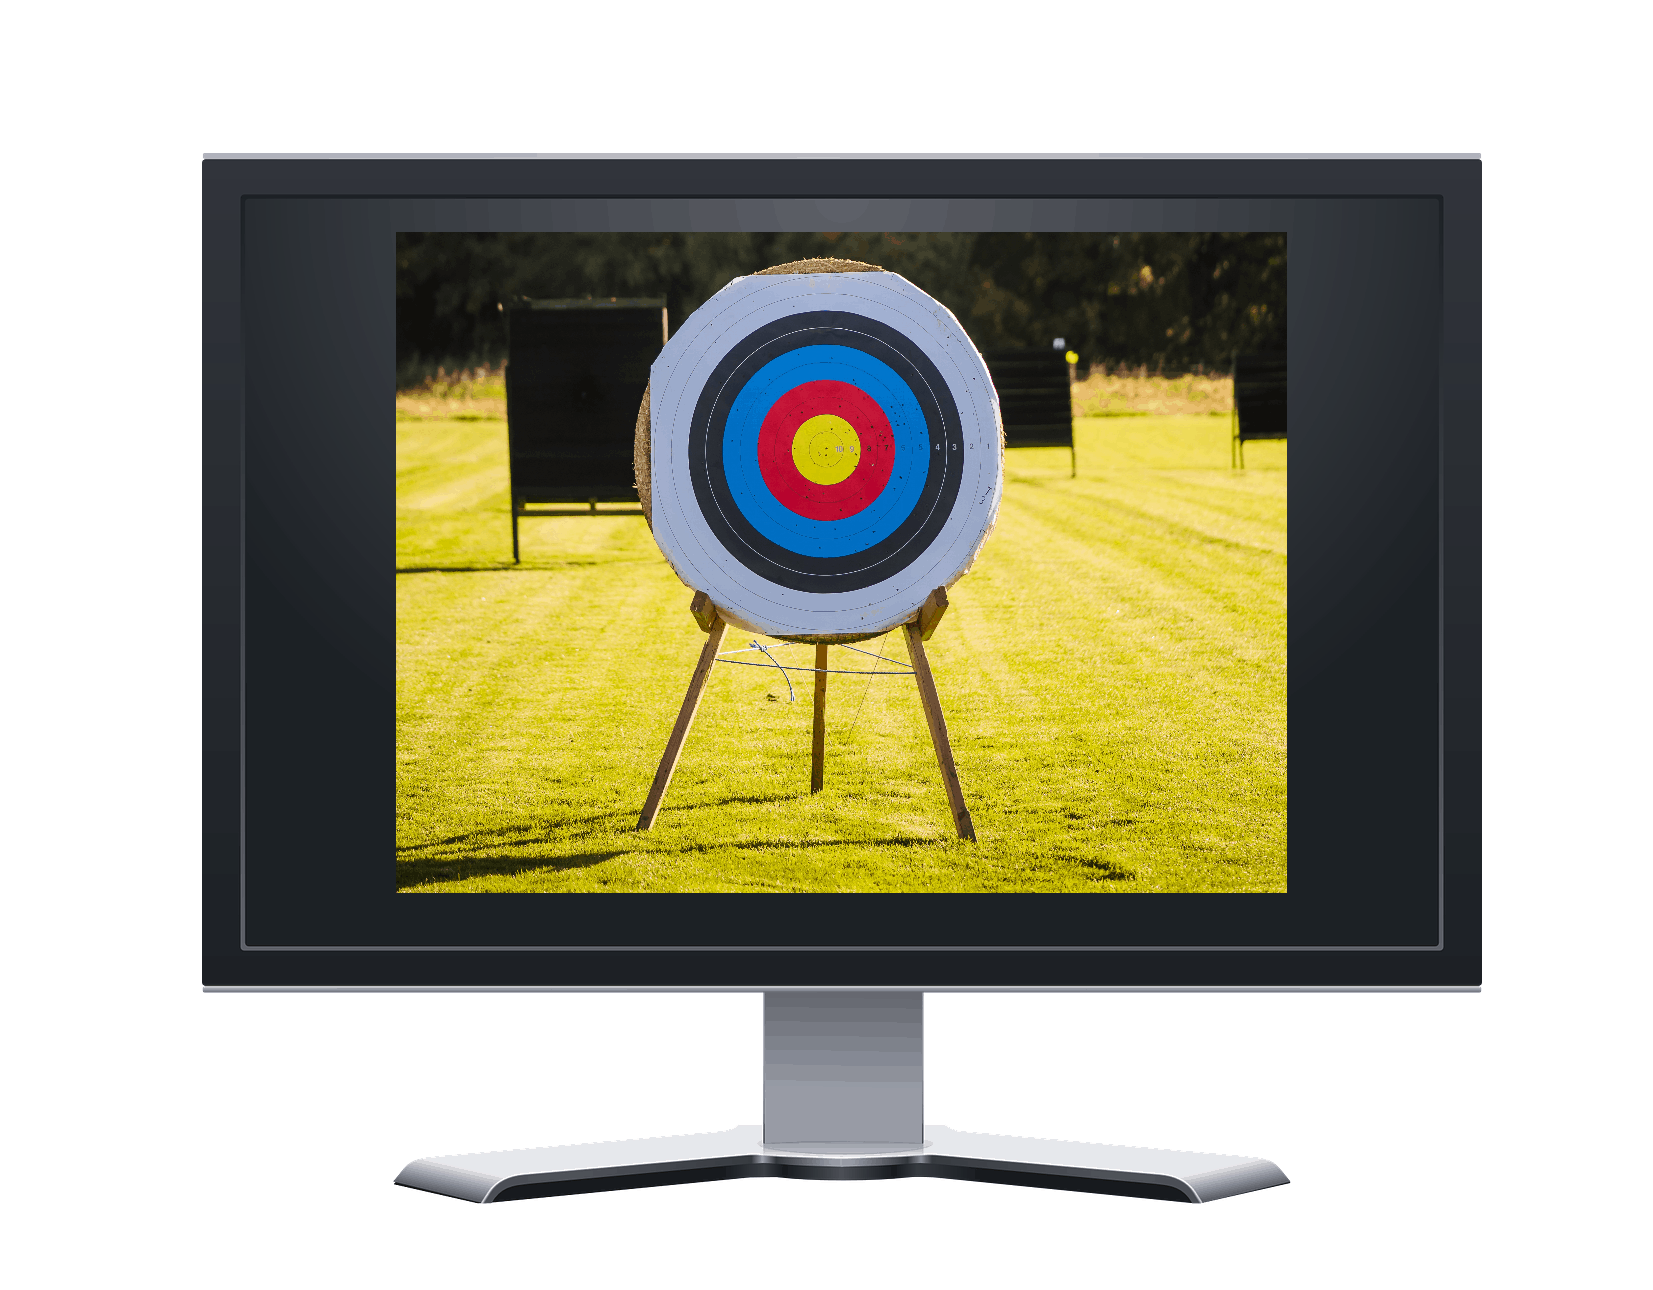 Archery target on a TV